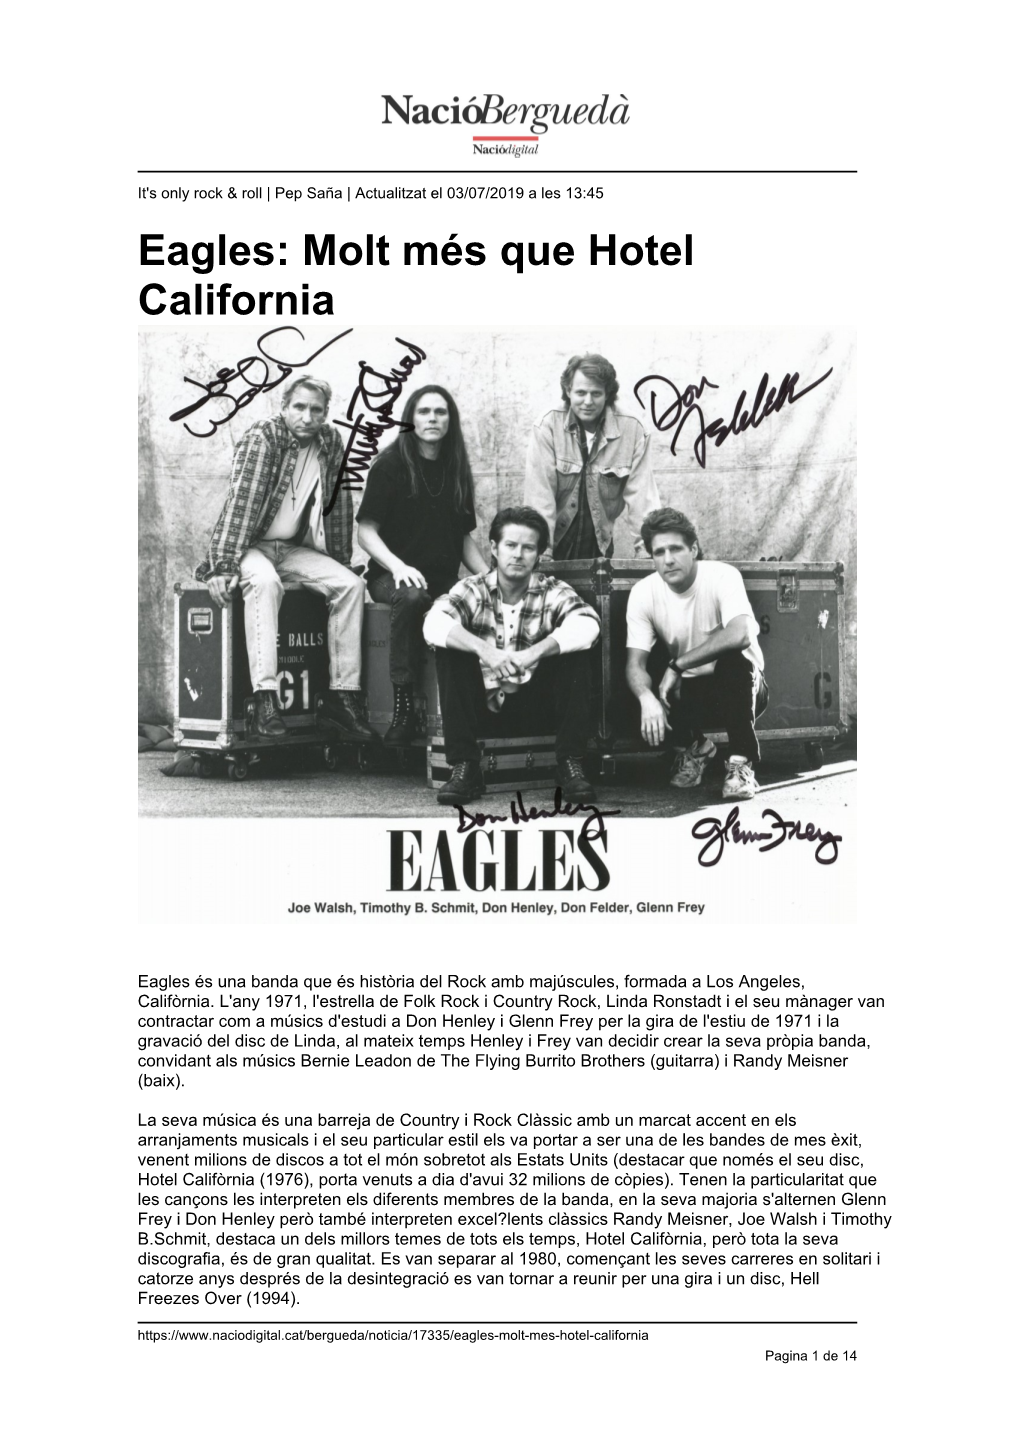 Eagles: Molt Més Que Hotel California